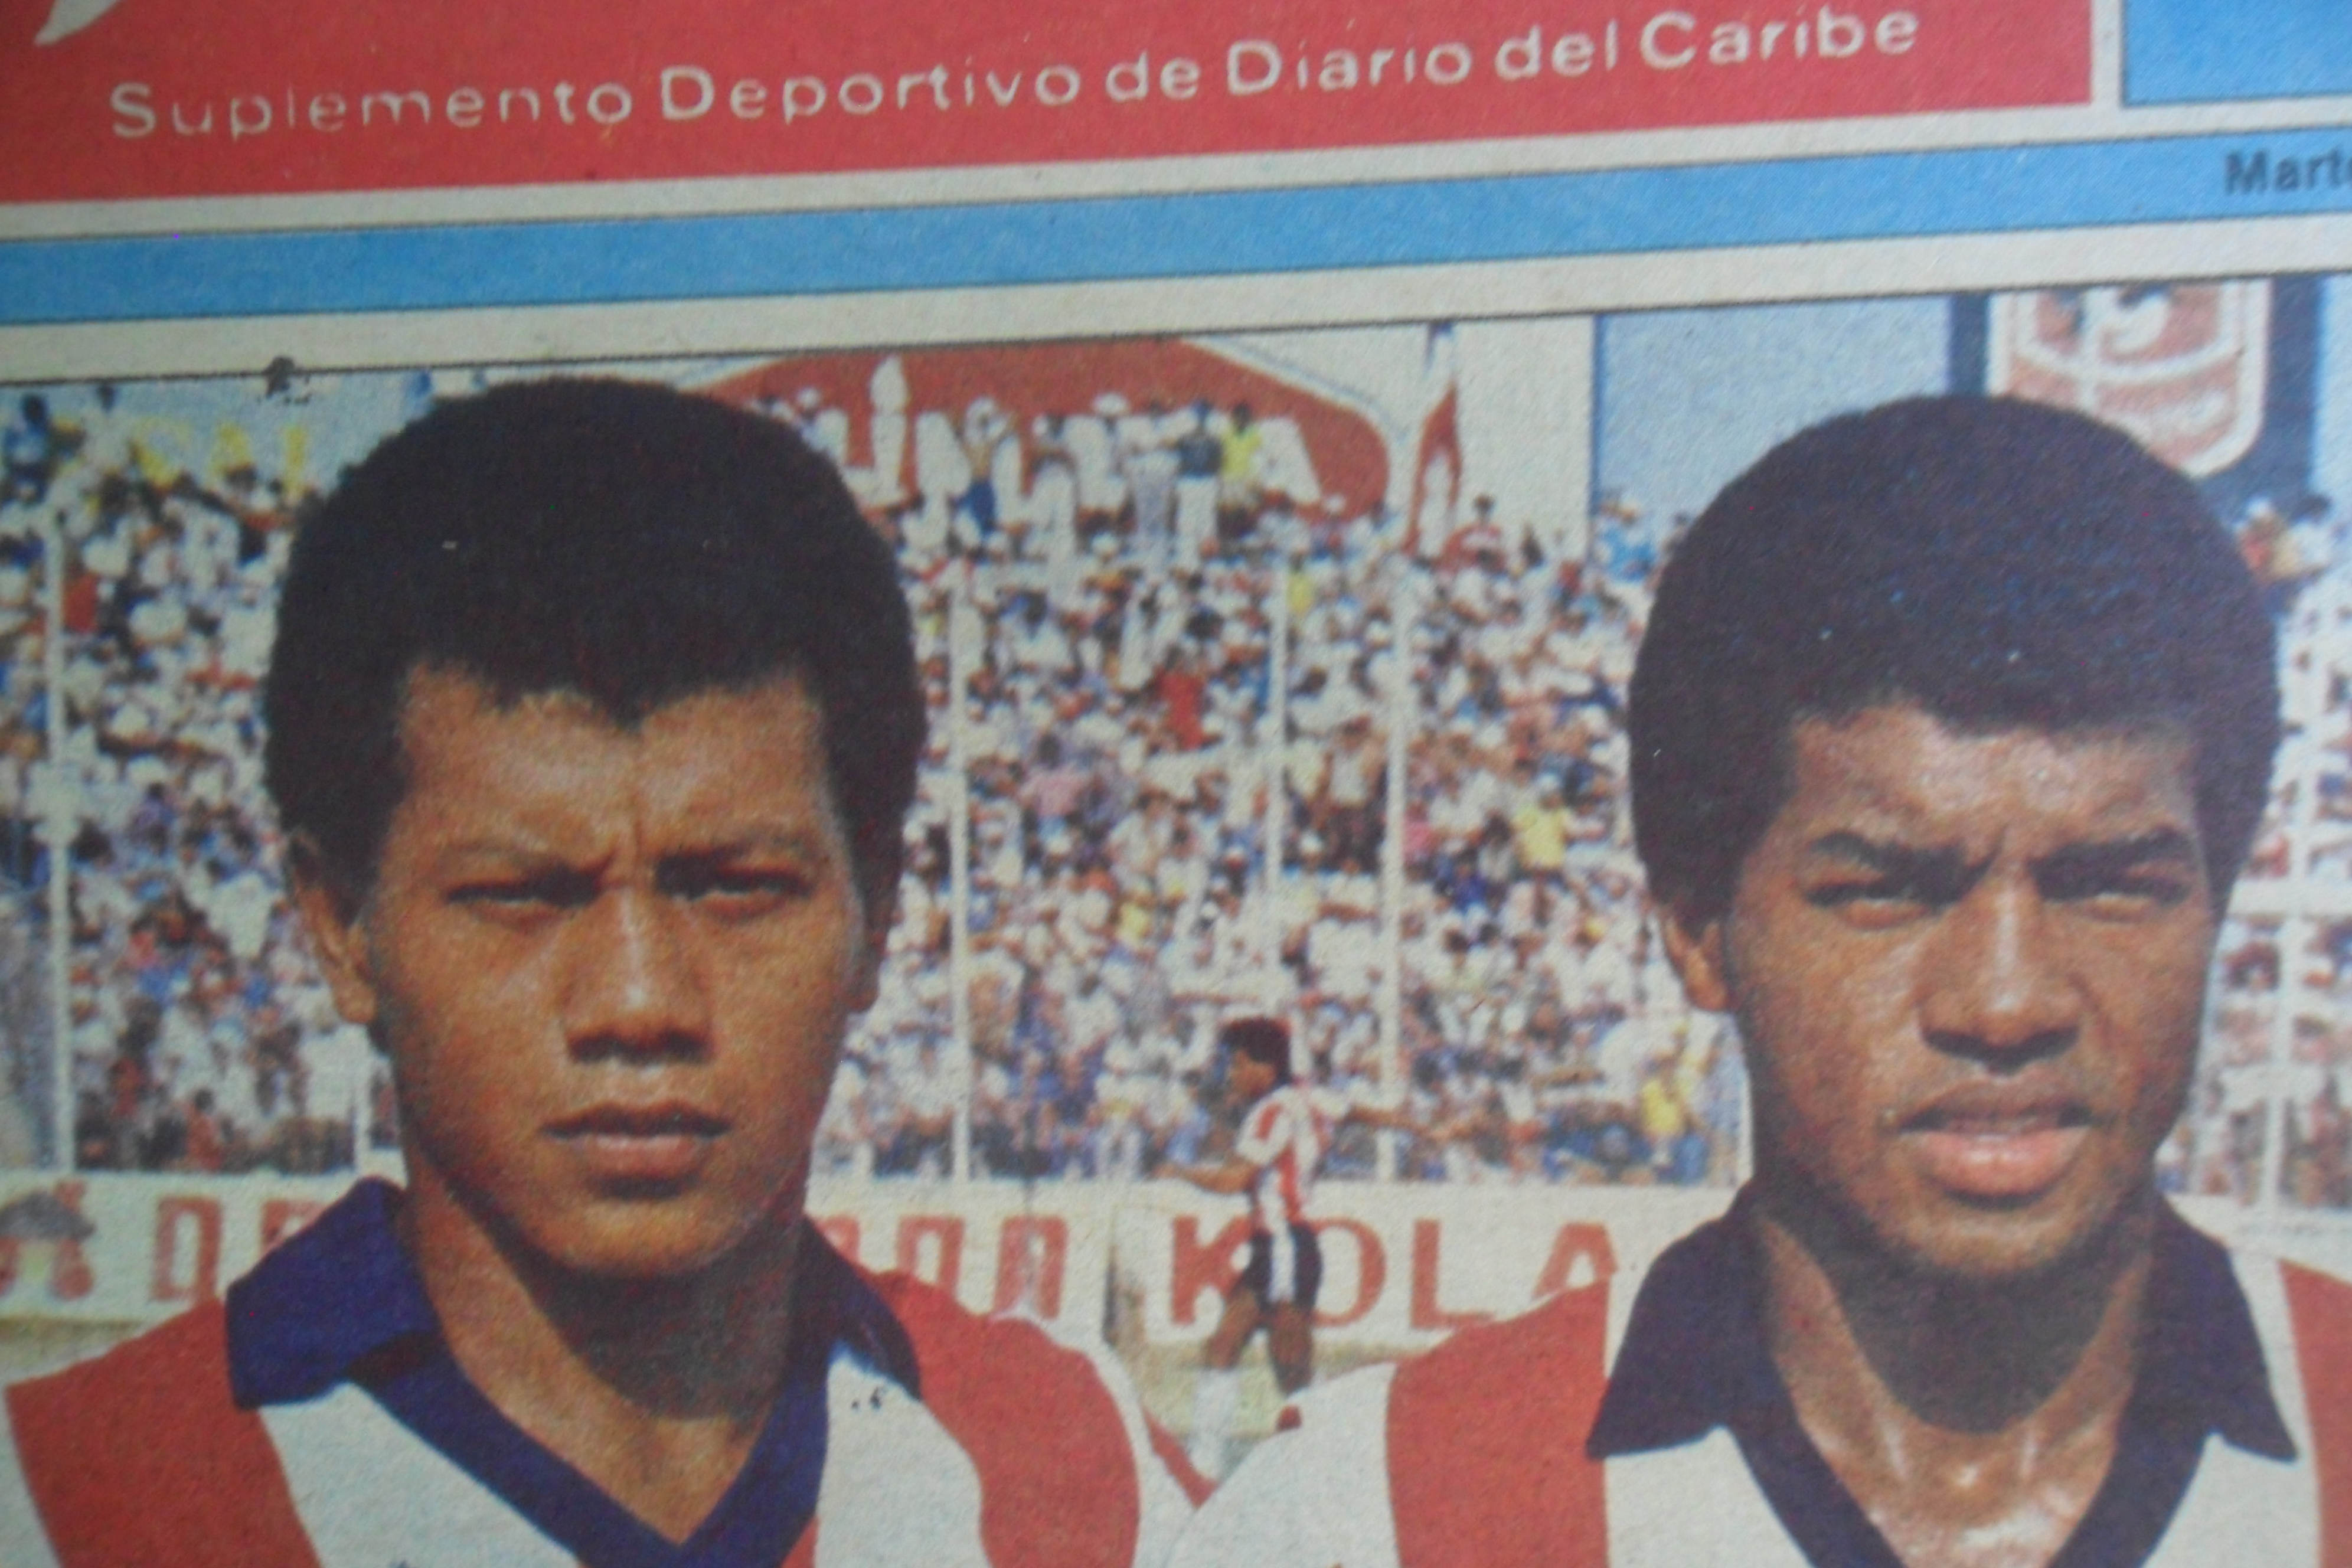 Didí Valderrama, al lado del peruano Julio Cesar Uribe. Didi el jugador mas caro de Colombia en 1984